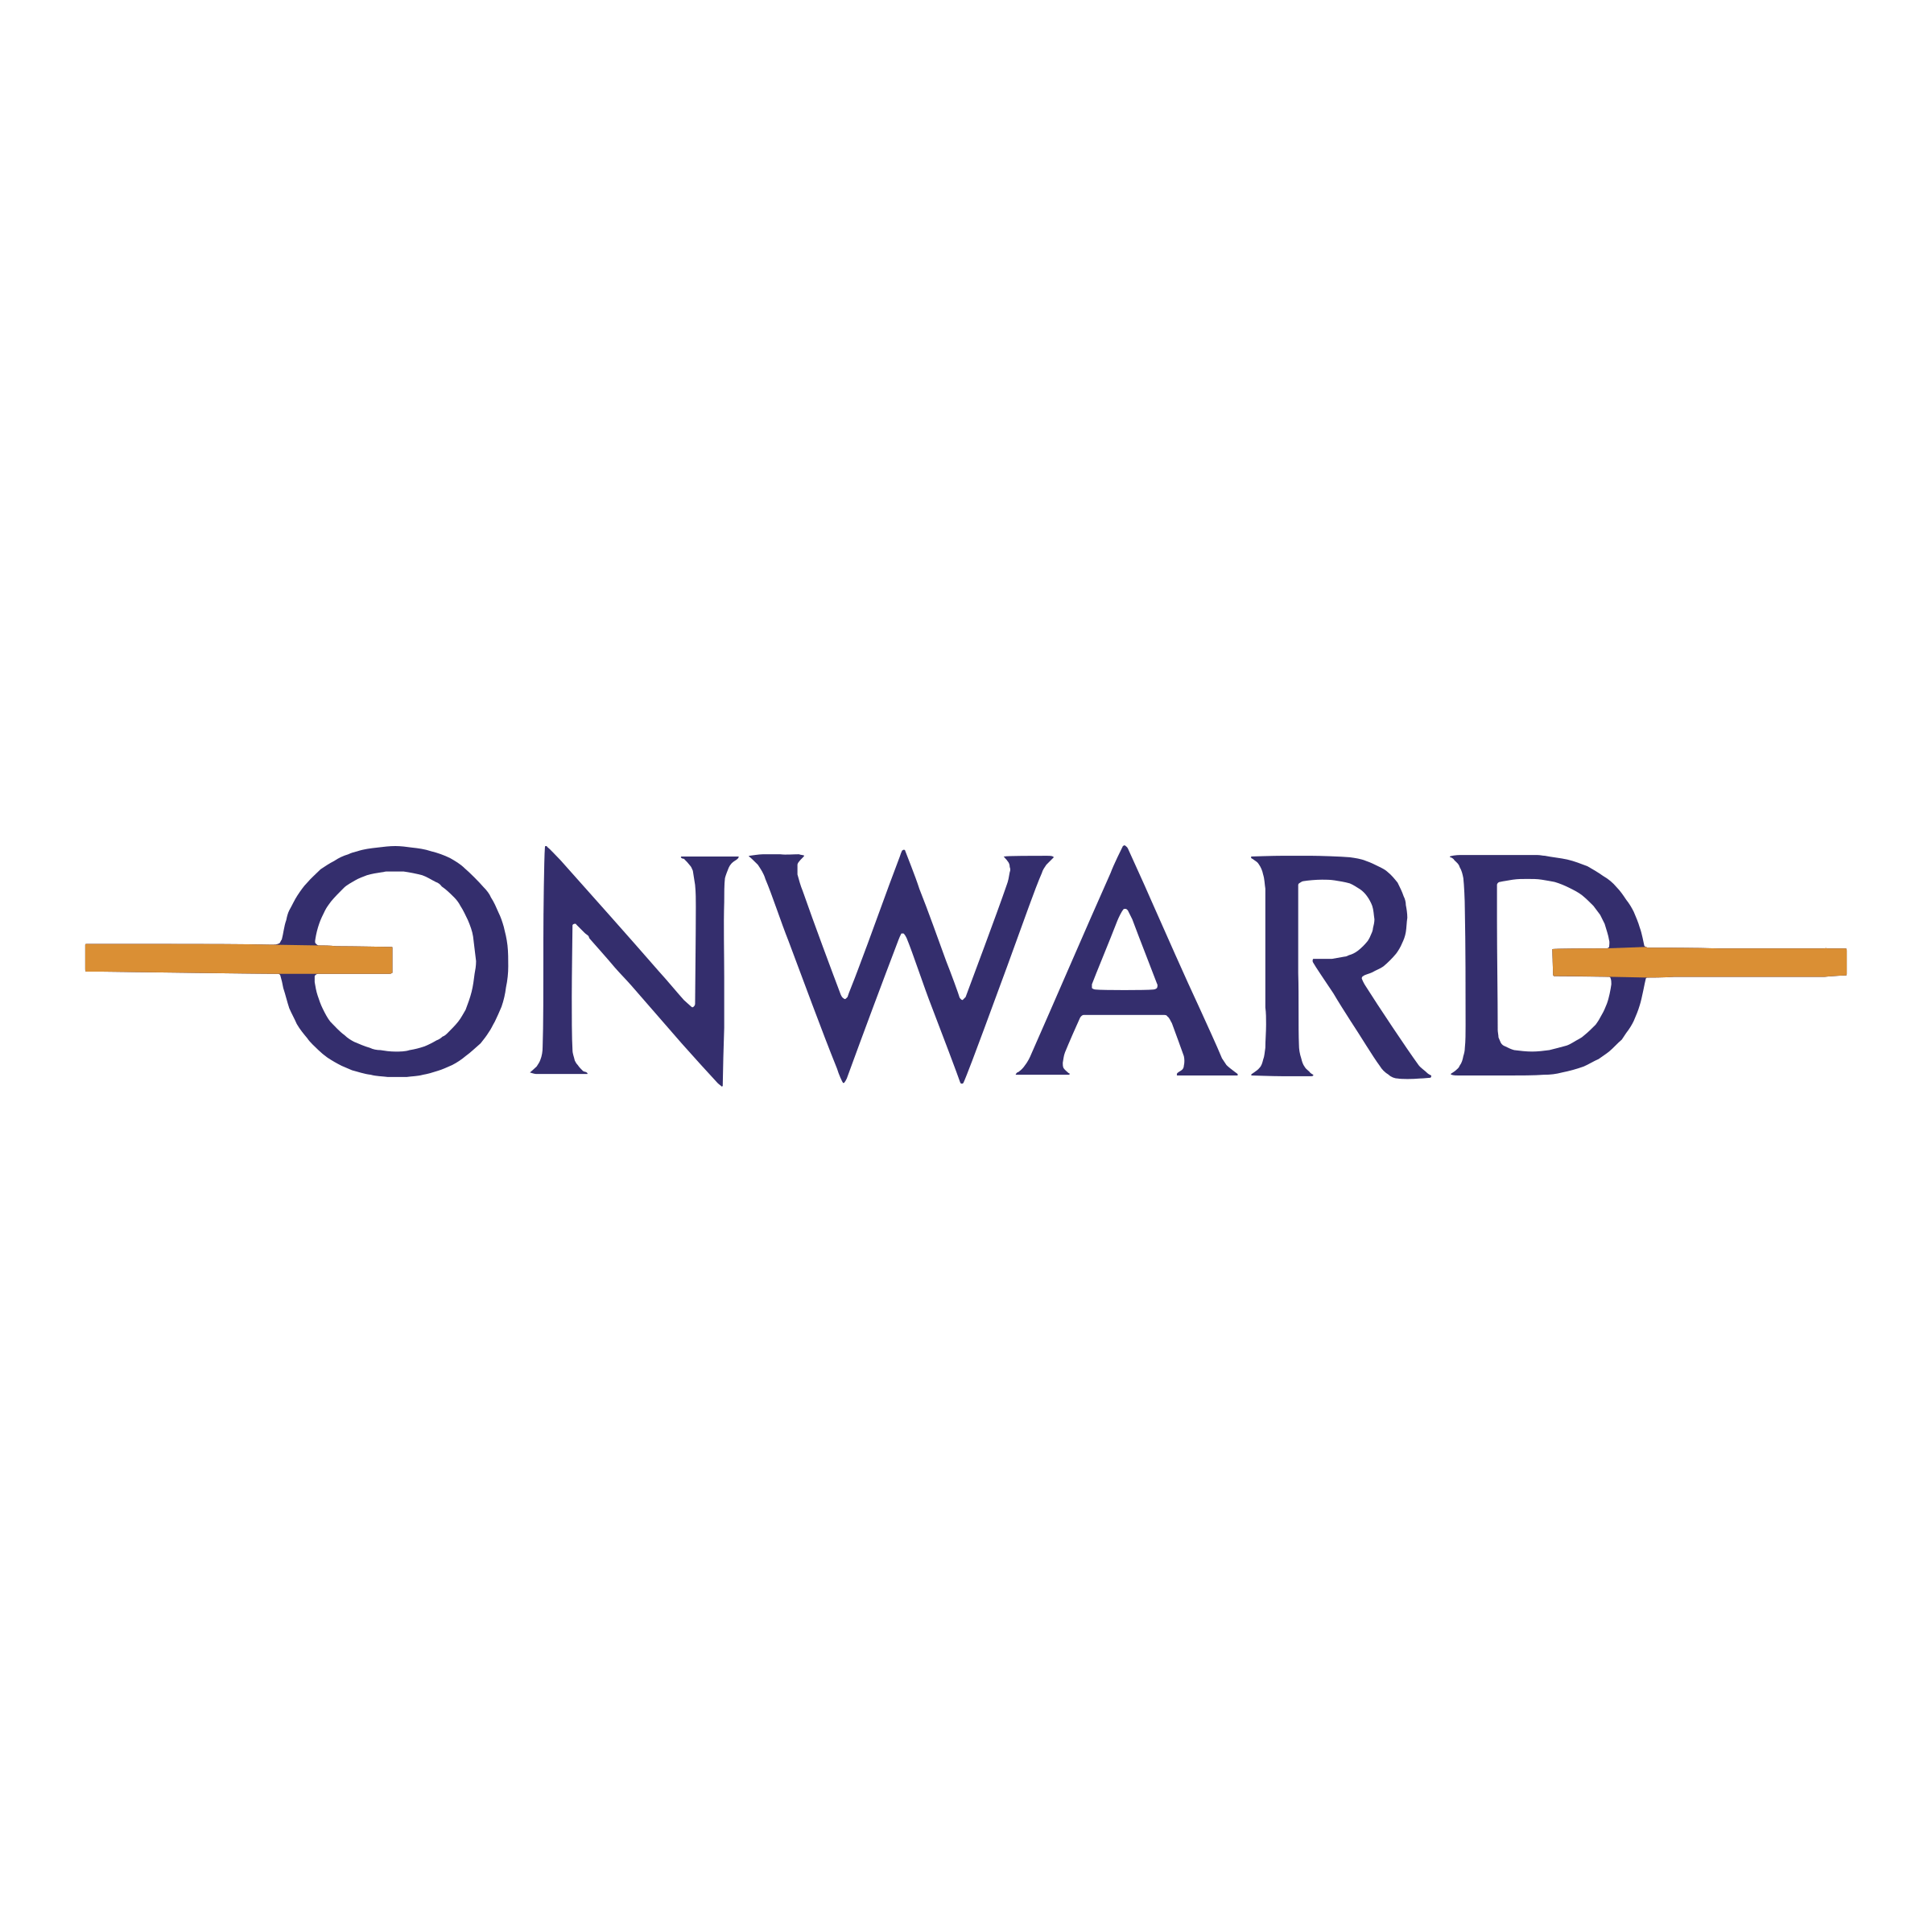 Onward Logo - Onward Logo PNG Transparent & SVG Vector